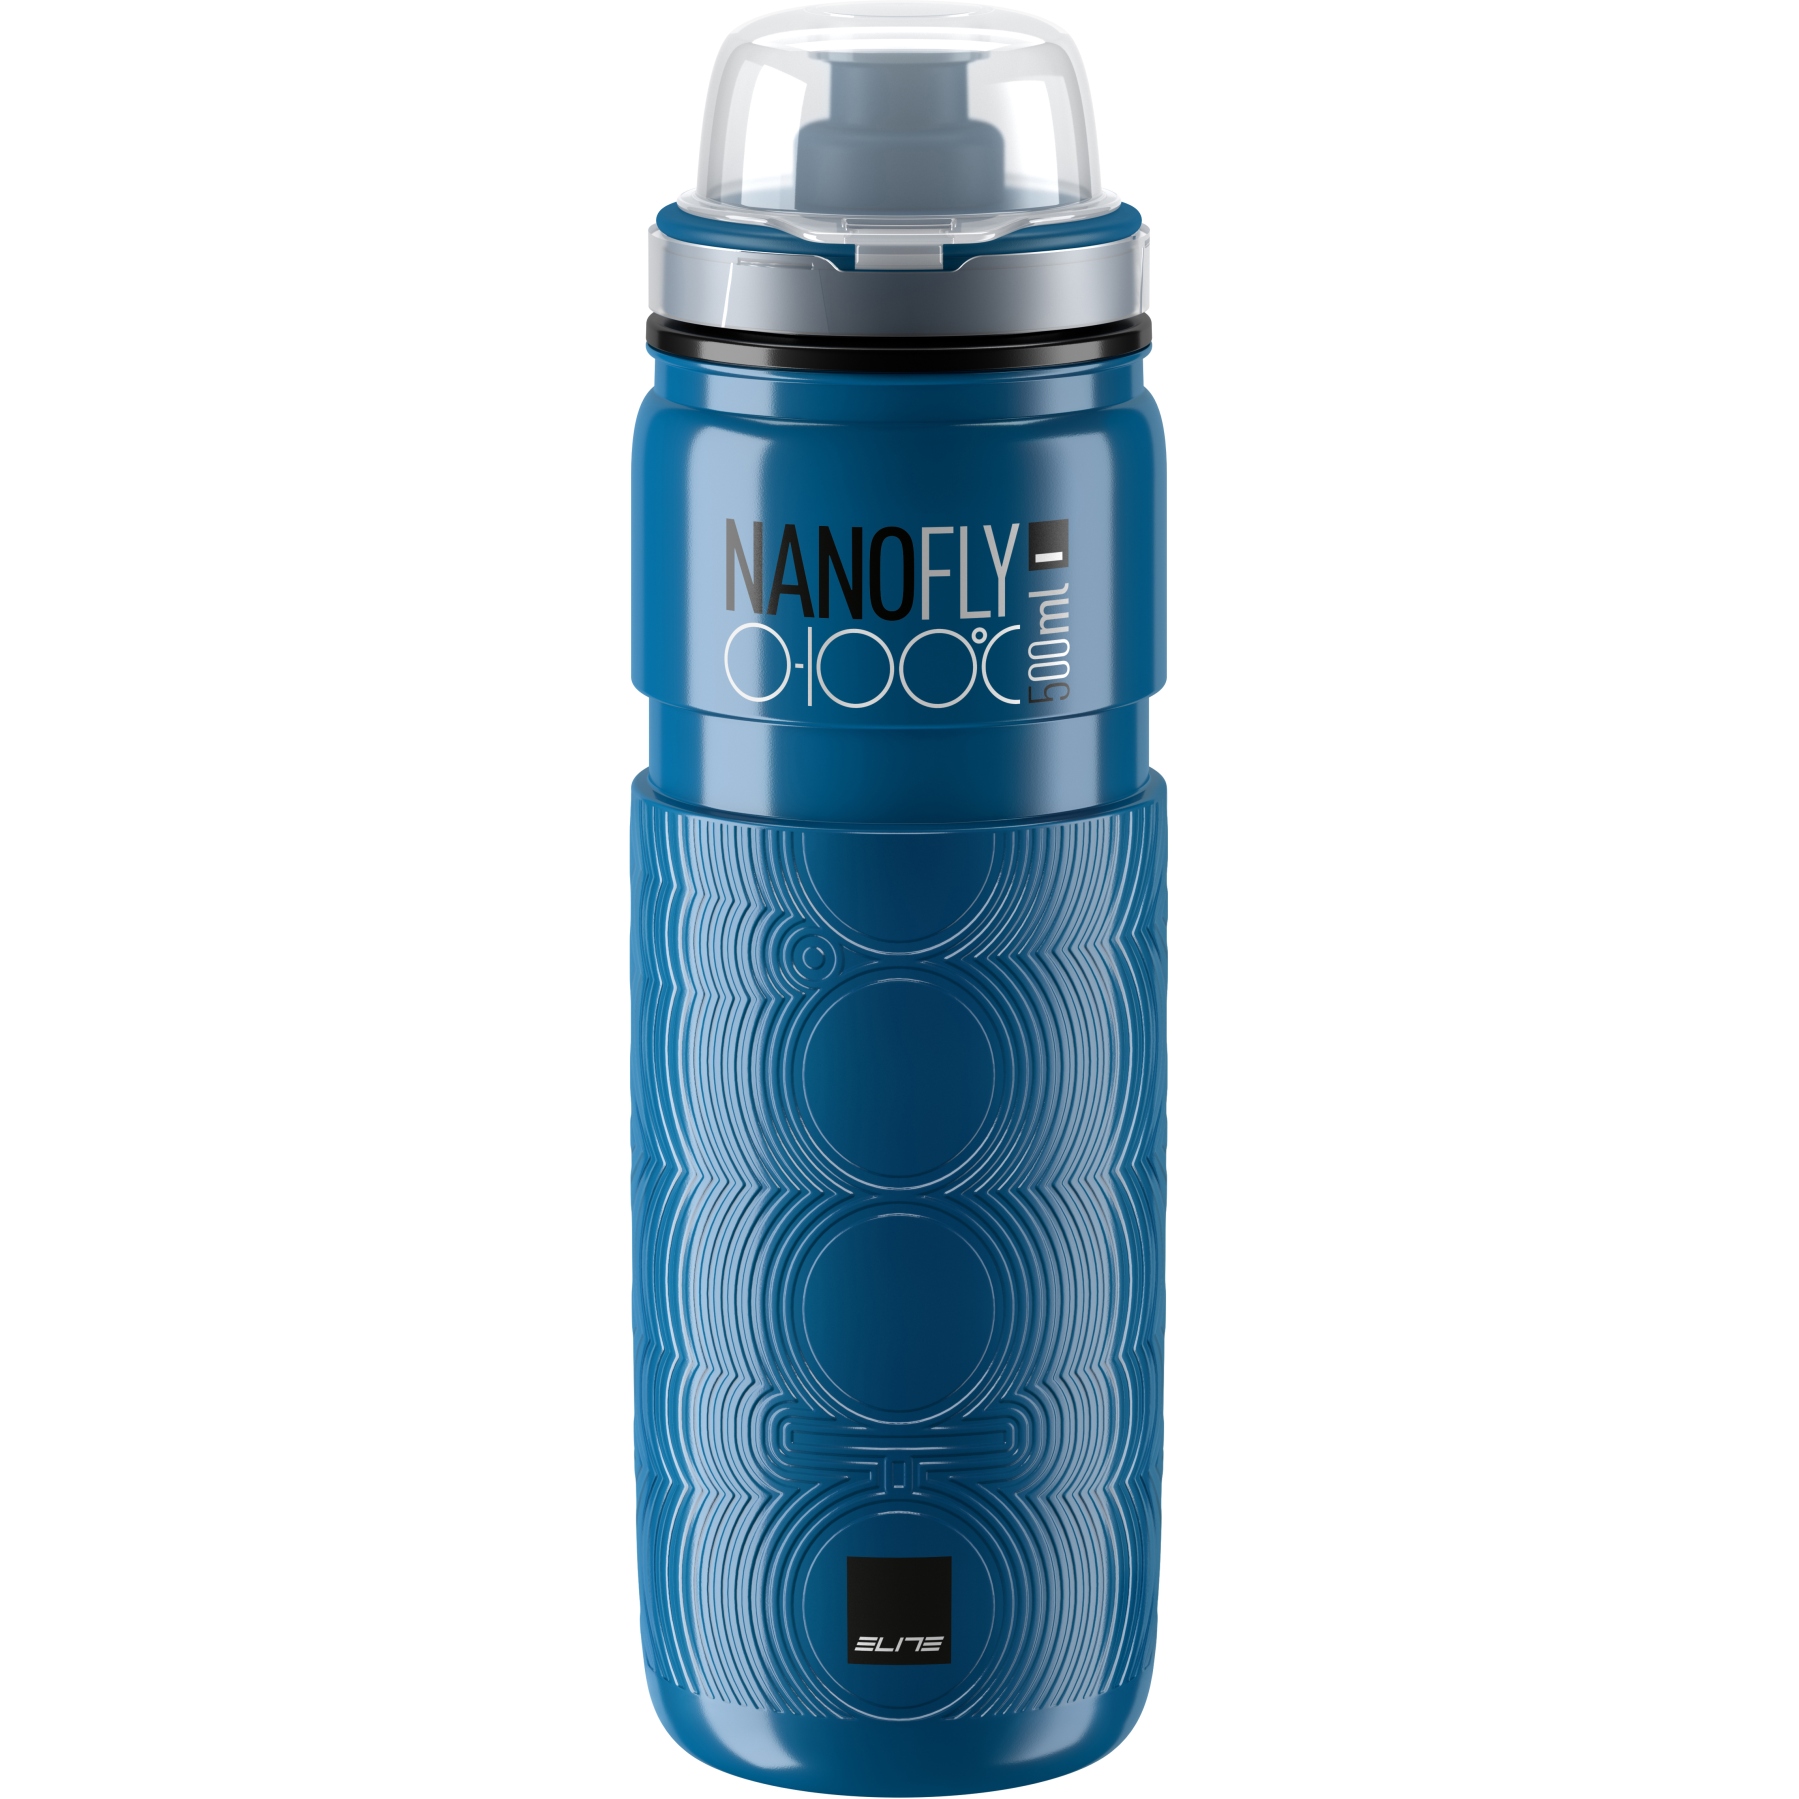 Produktbild von Elite Nanofly 0-100° Thermoflasche 500ml - blau